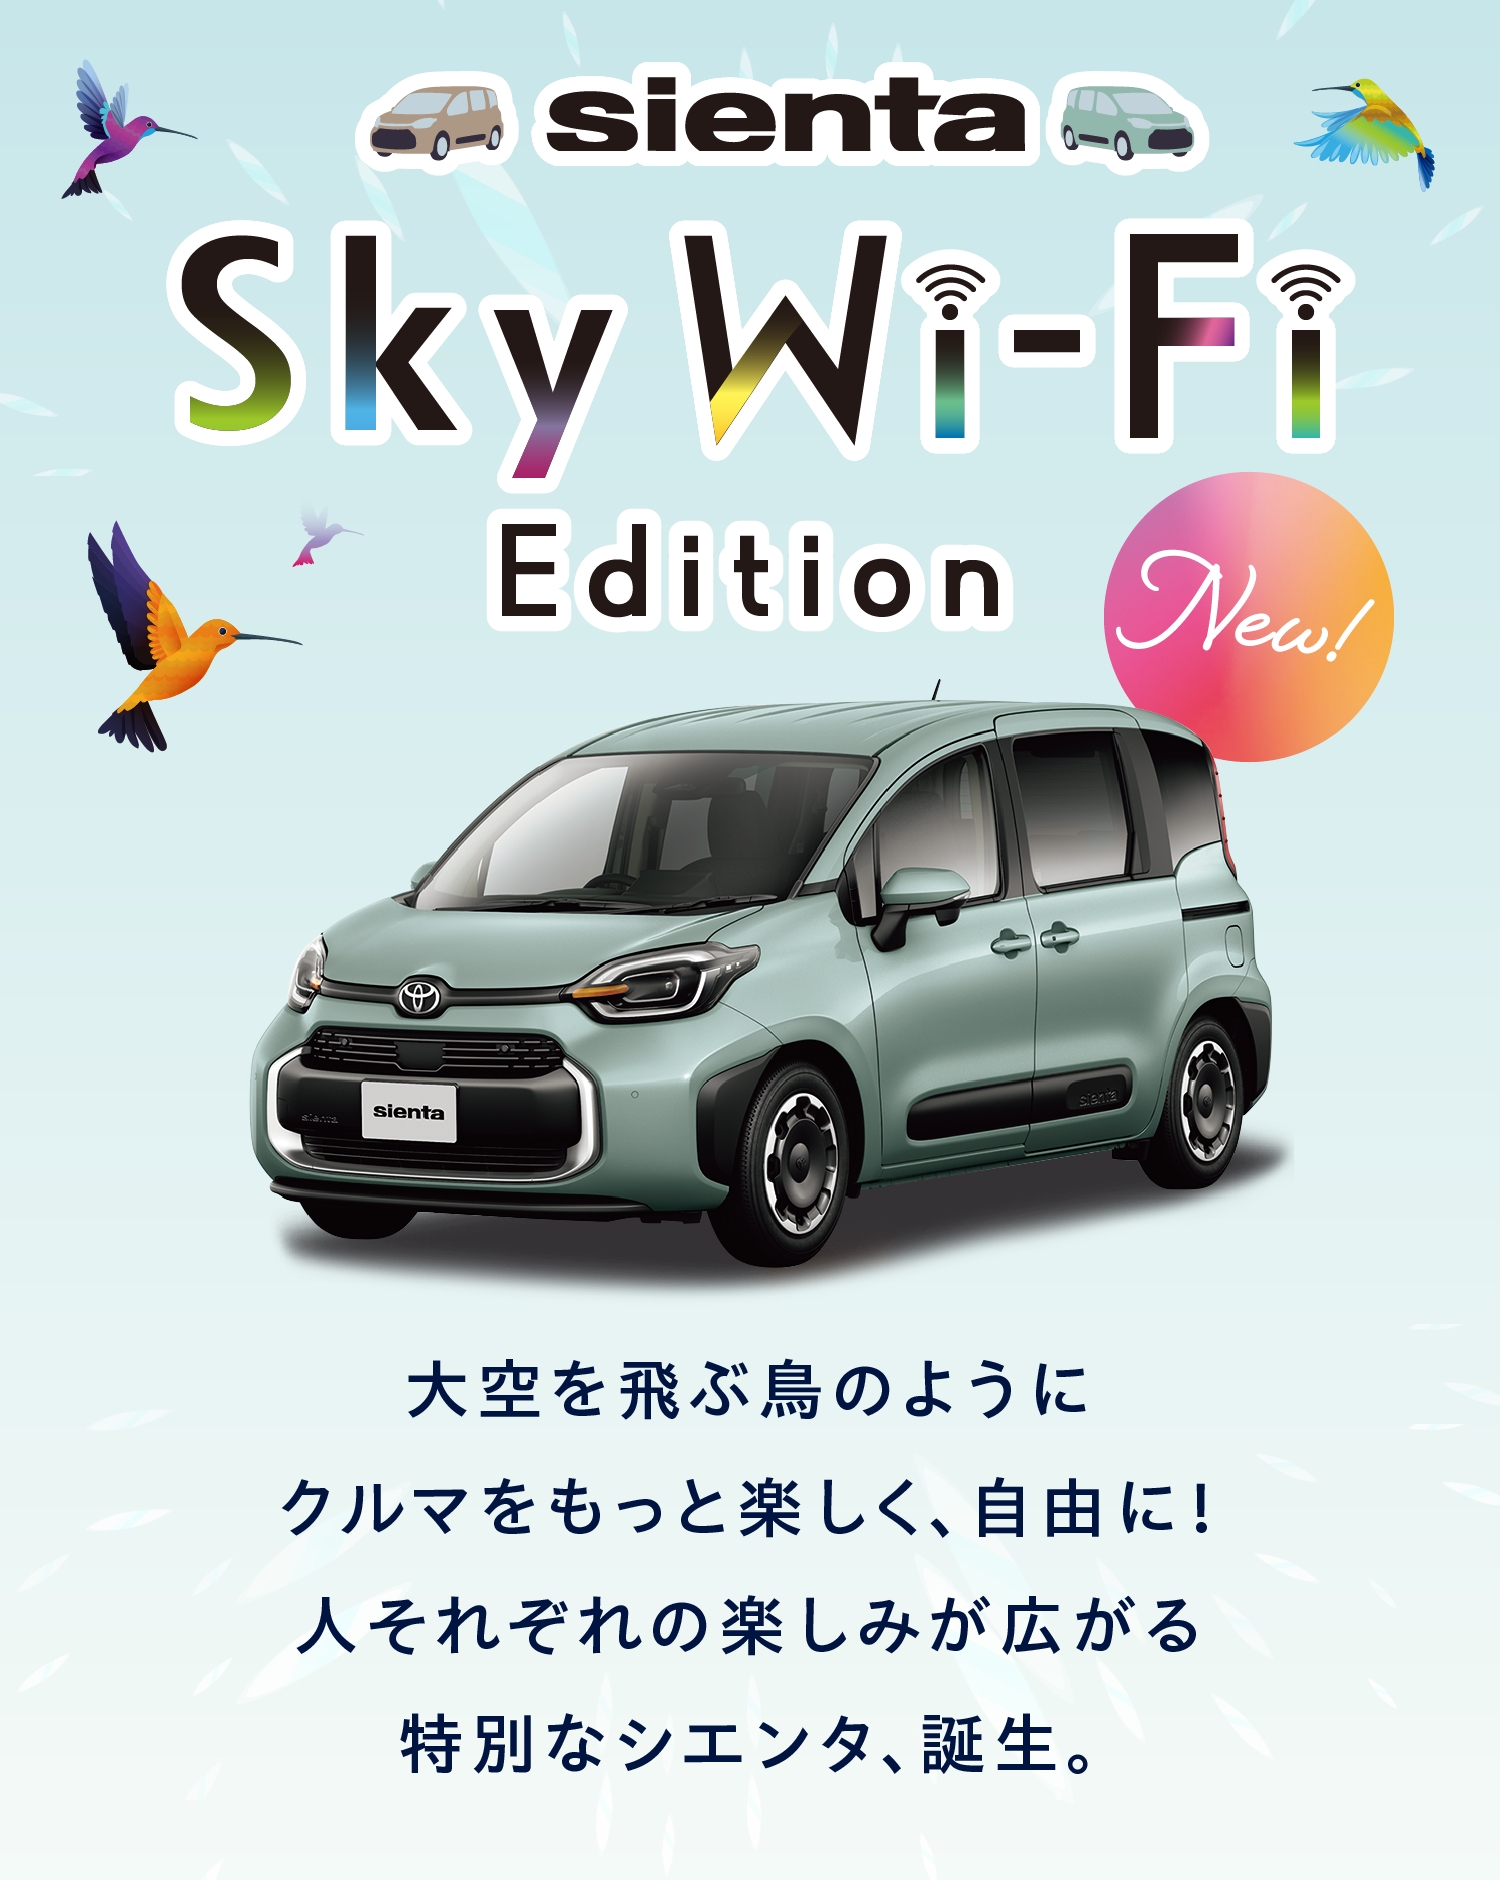 SIENTA Sky Wi-Fi Edition デビュー! 大空を飛ぶ鳥のようにクルマをもっと楽しく、自由に！人それぞれの楽しみが広がる特別なシエンタ、誕生。